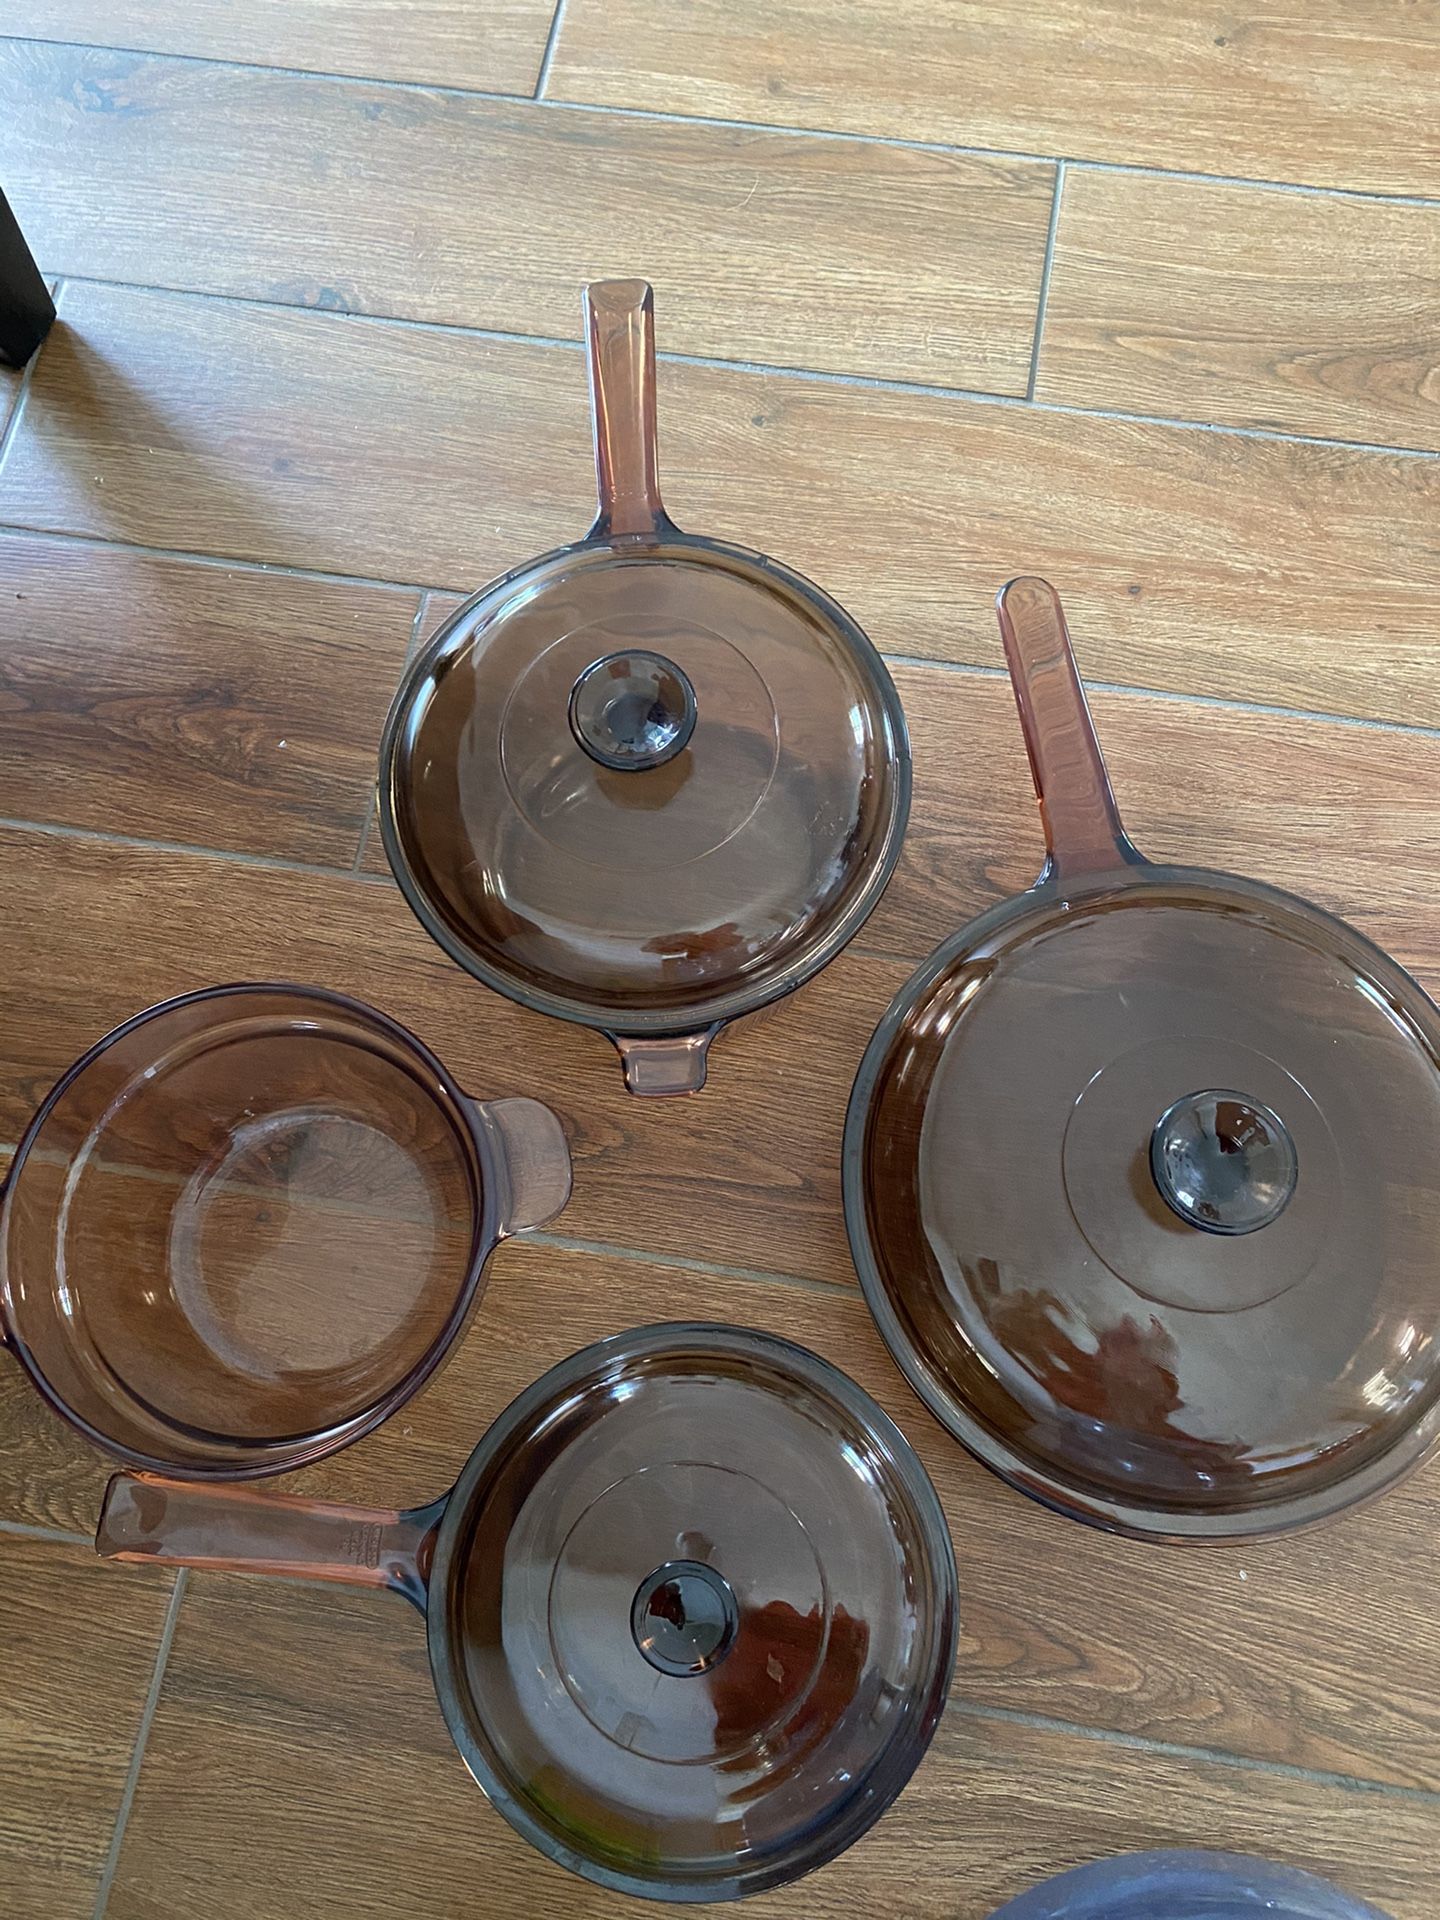 Pyrex brown glass set of 7. 2 pots 2 pans 3 lids total 7items